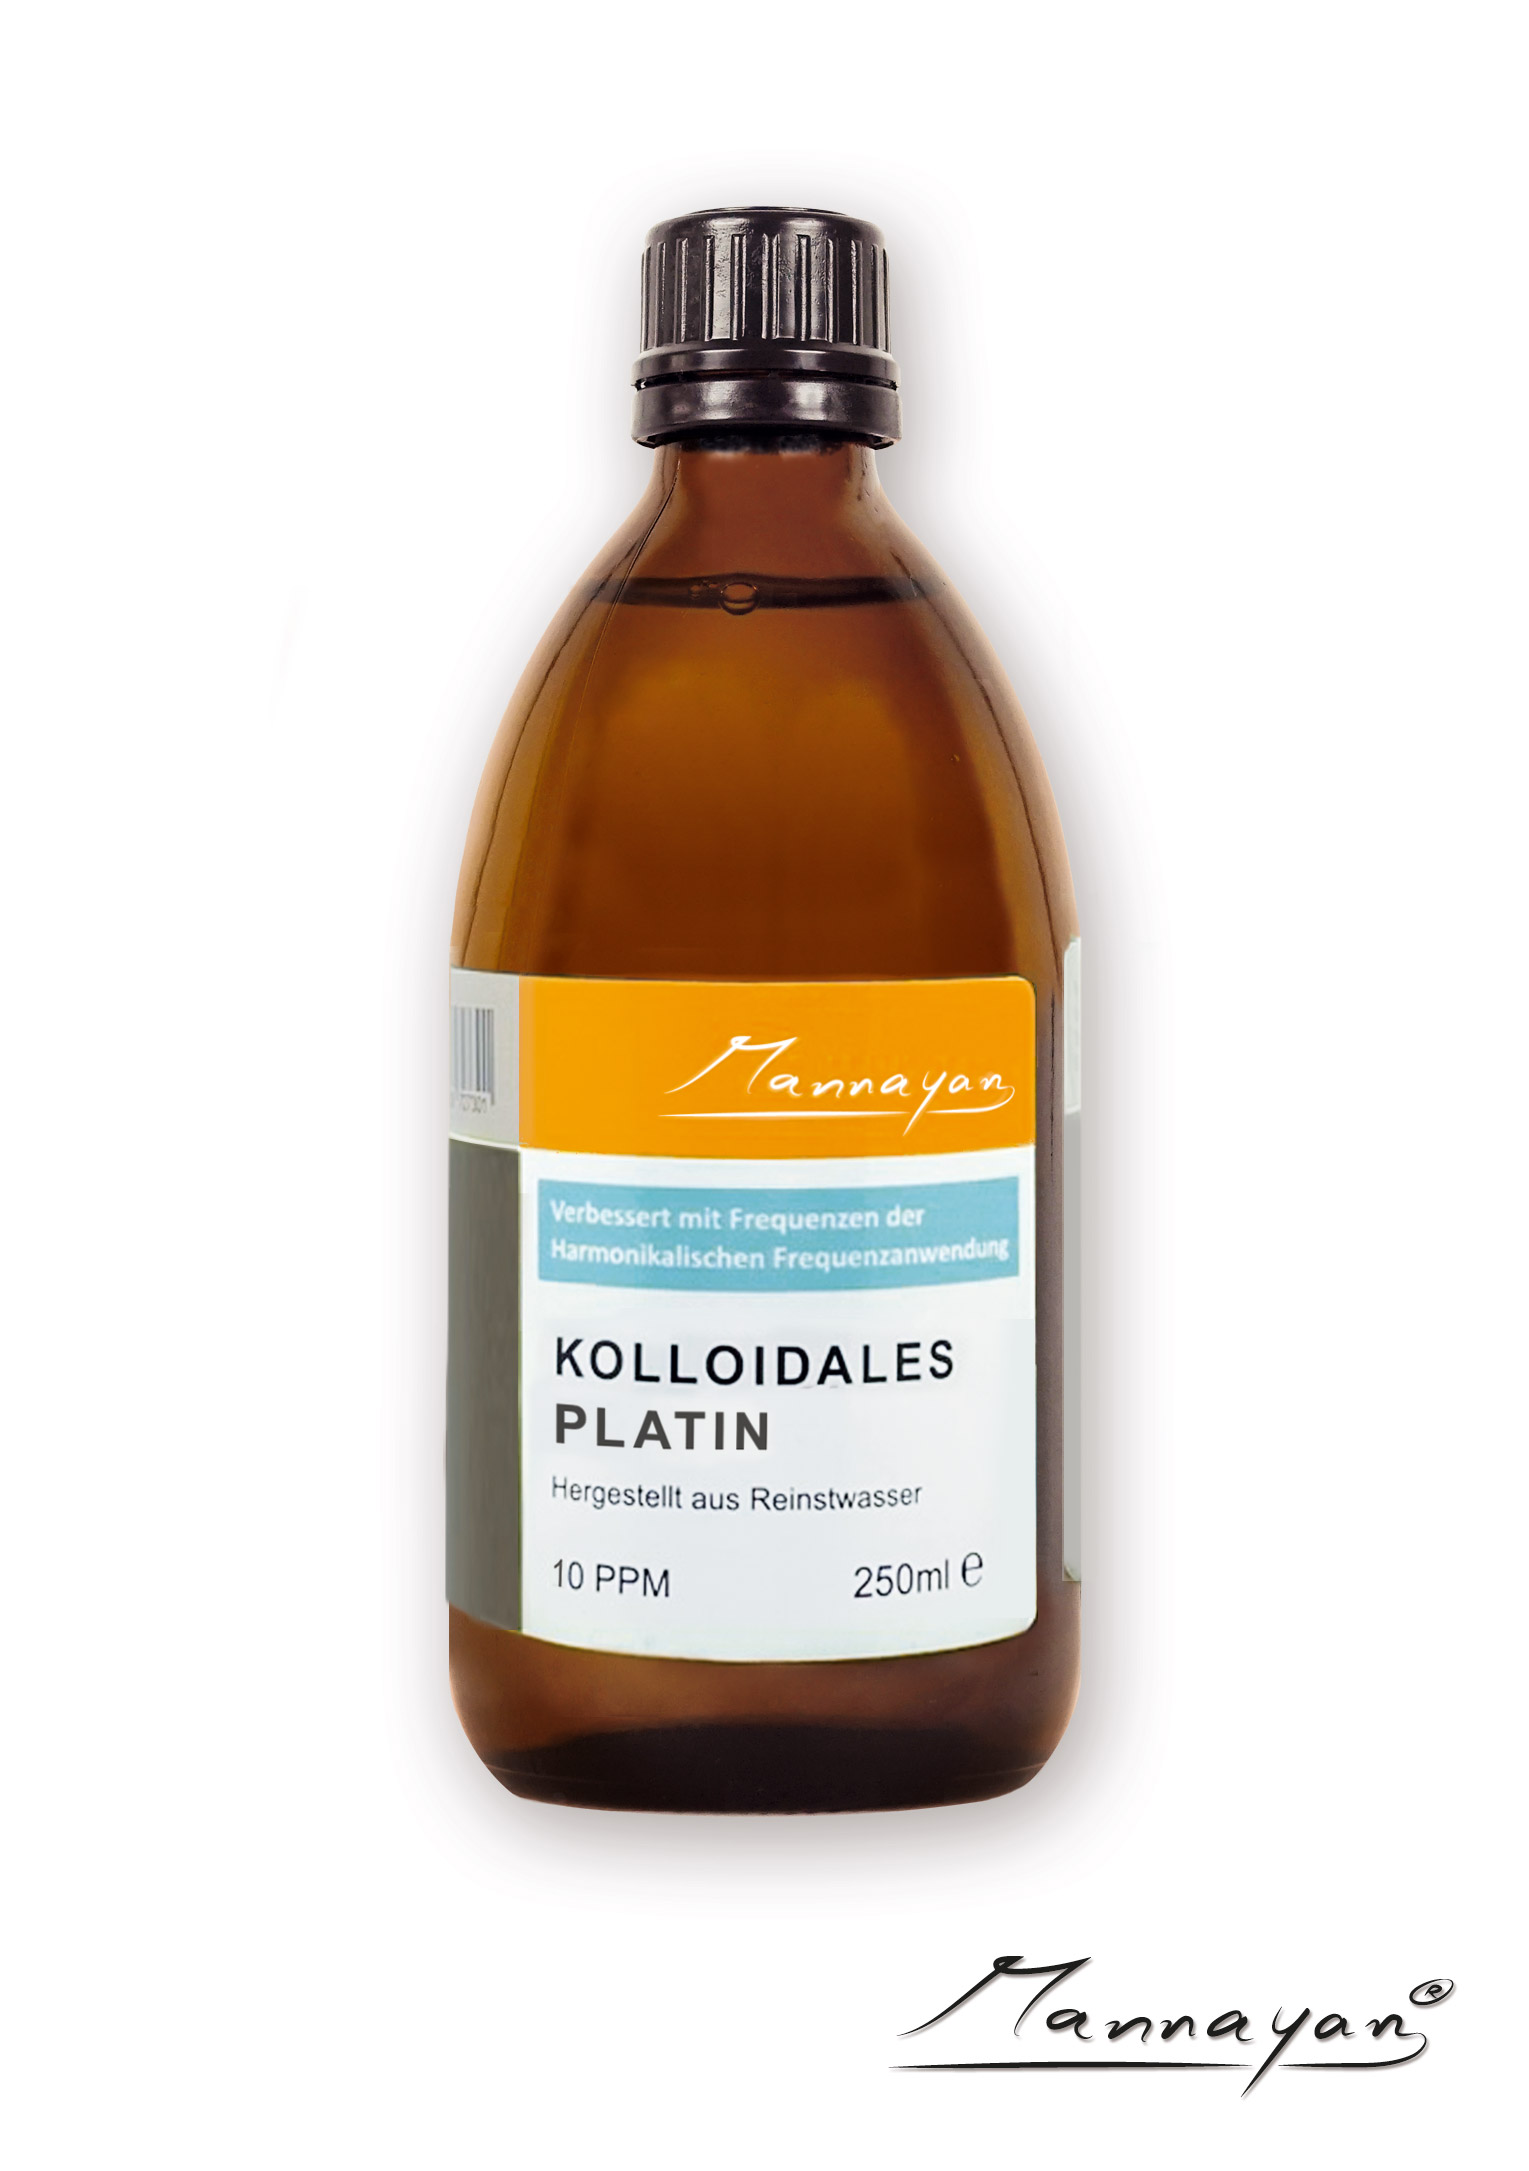 Mannayan Kolloidales Platin 250 ml 